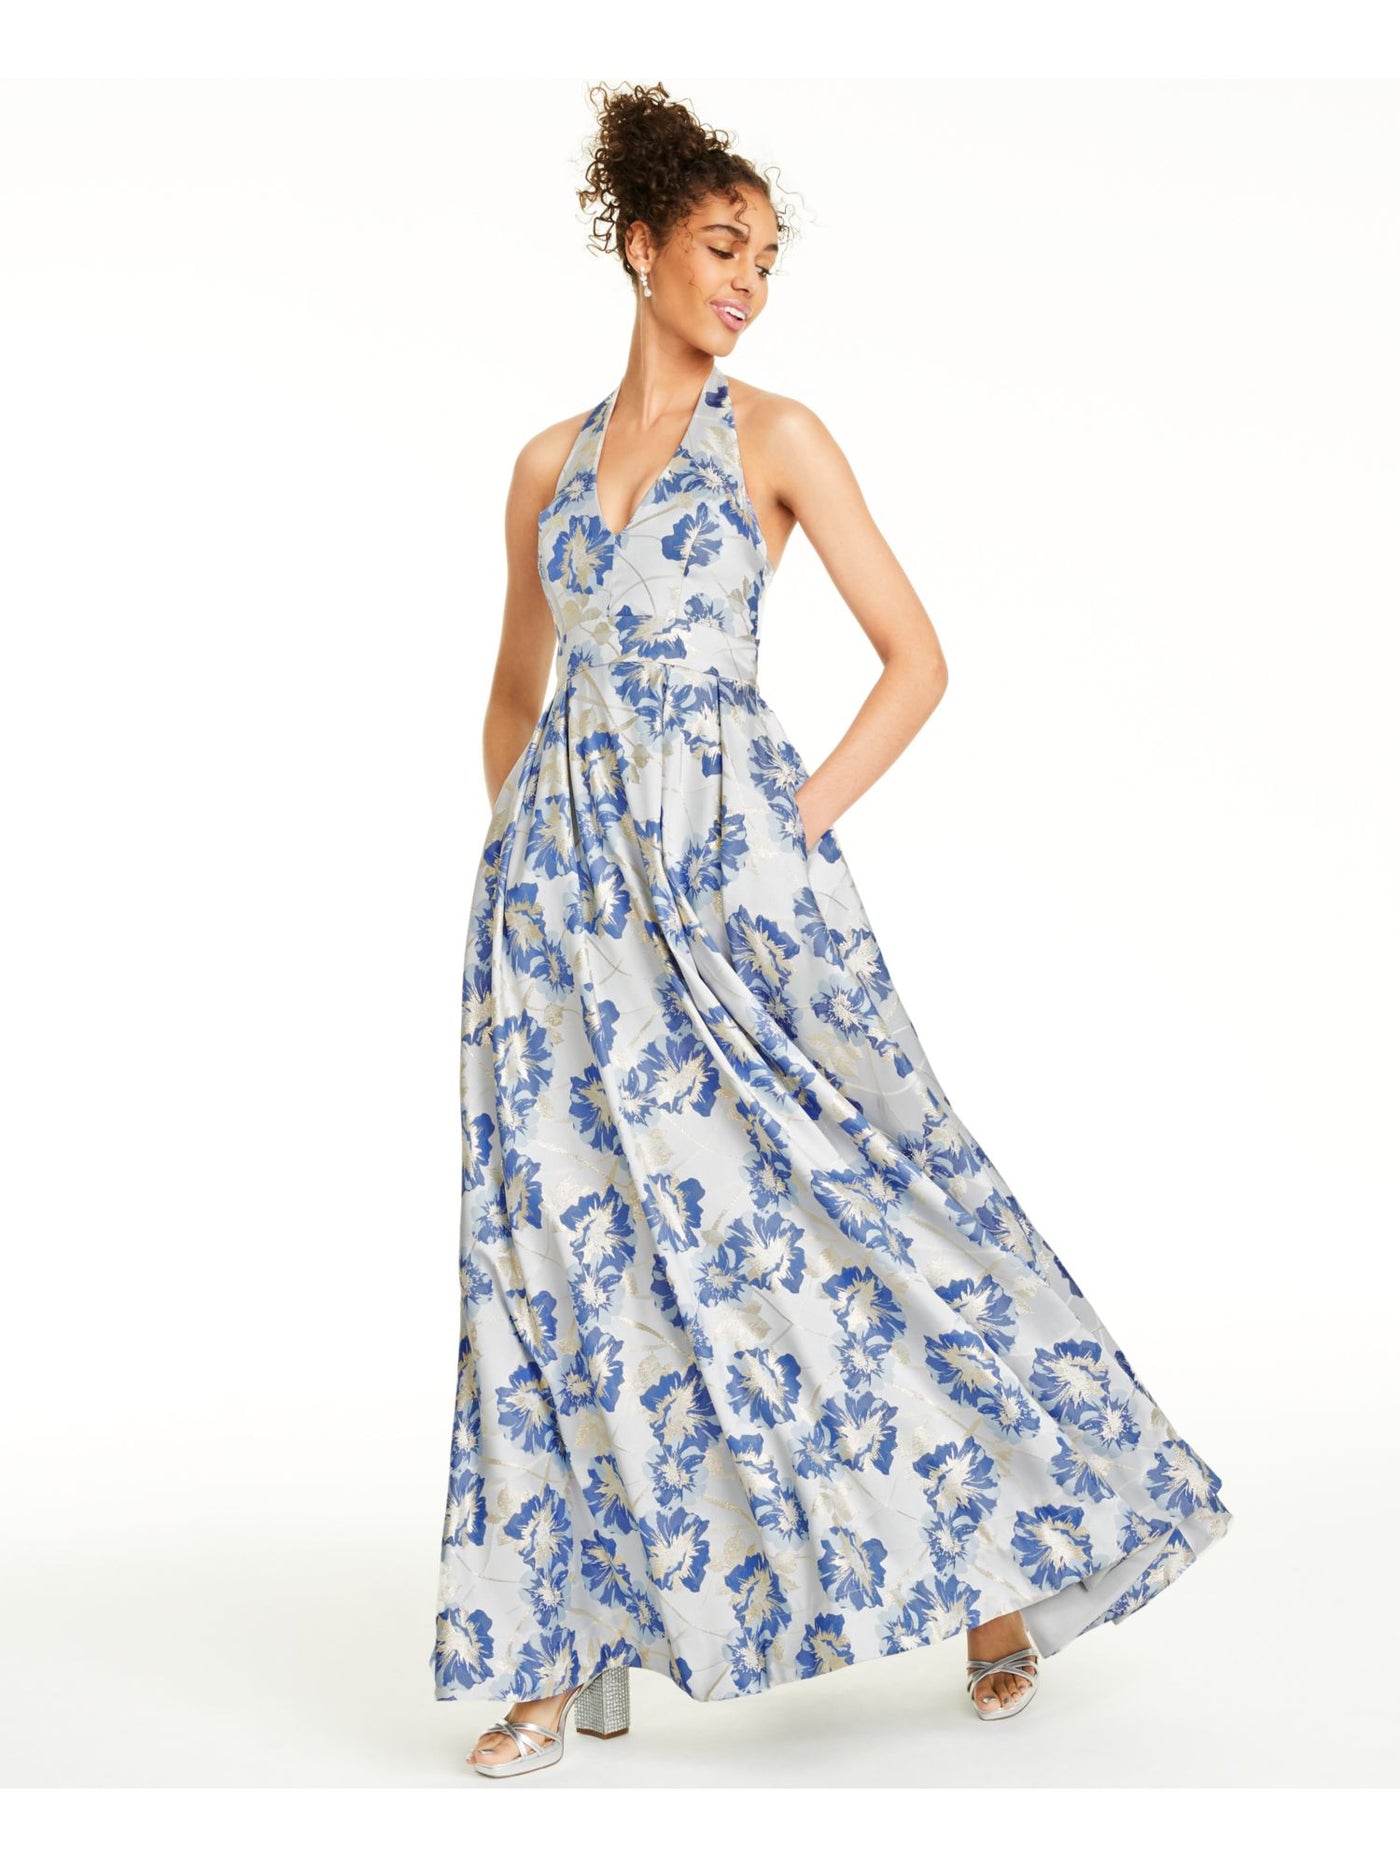 SPEECHLESS Womens Blue Floral Sleeveless V Neck Full-Length Formal Fit + Flare Dress Juniors 0